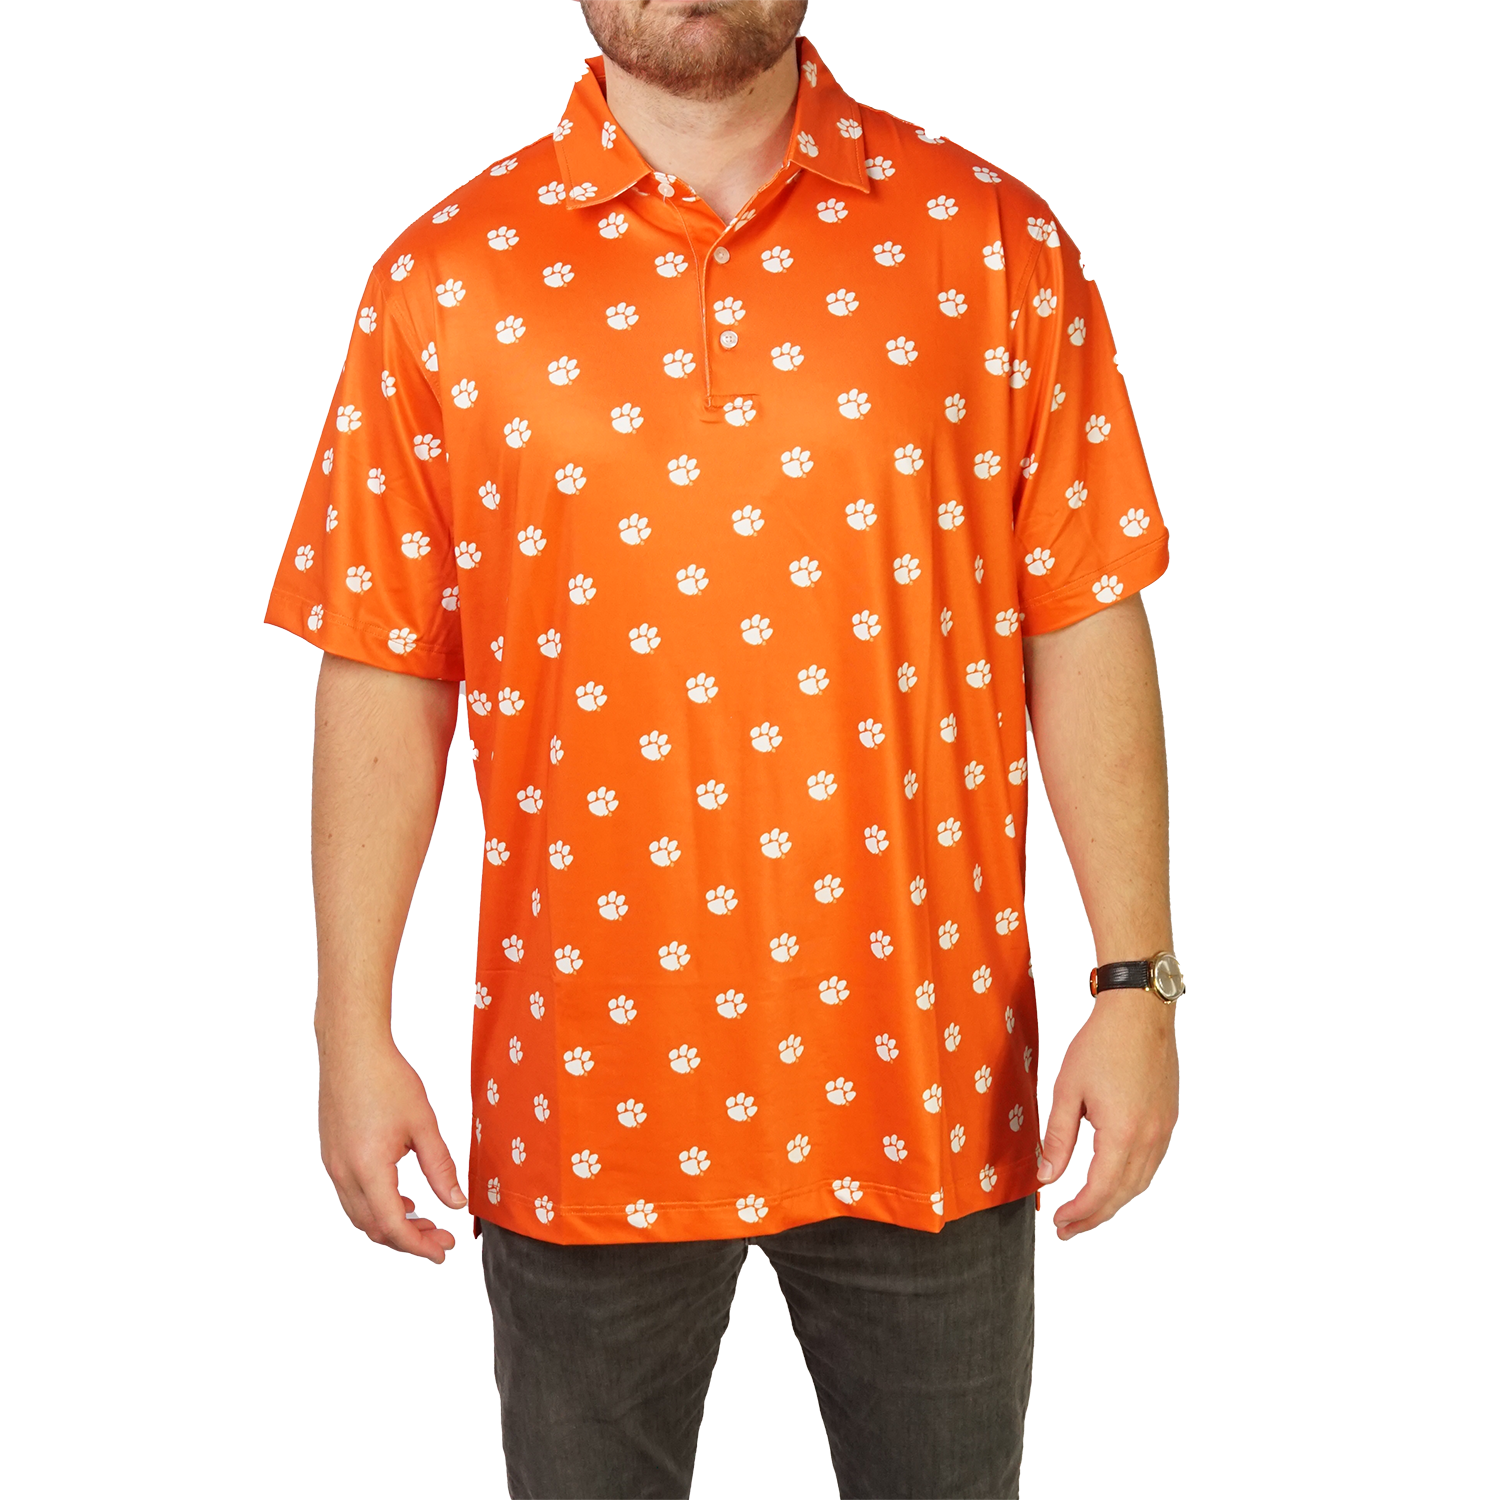 orioles golf shirt